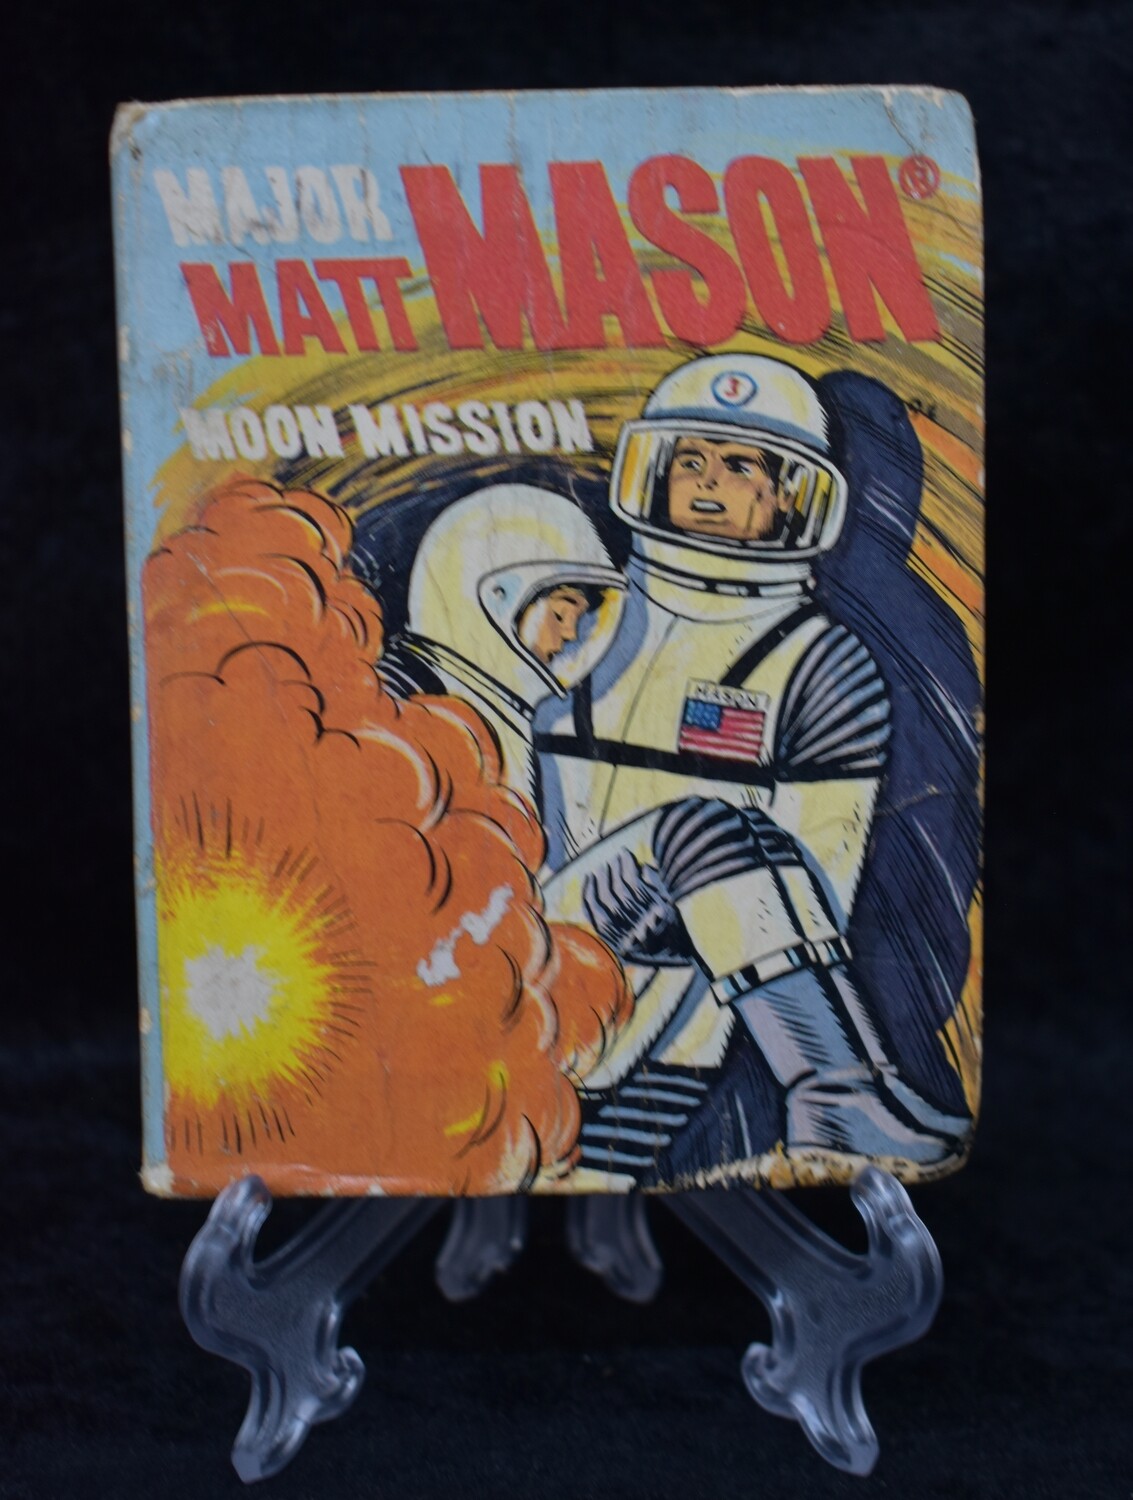 1968 Major Matt Mason Moon Mission Book